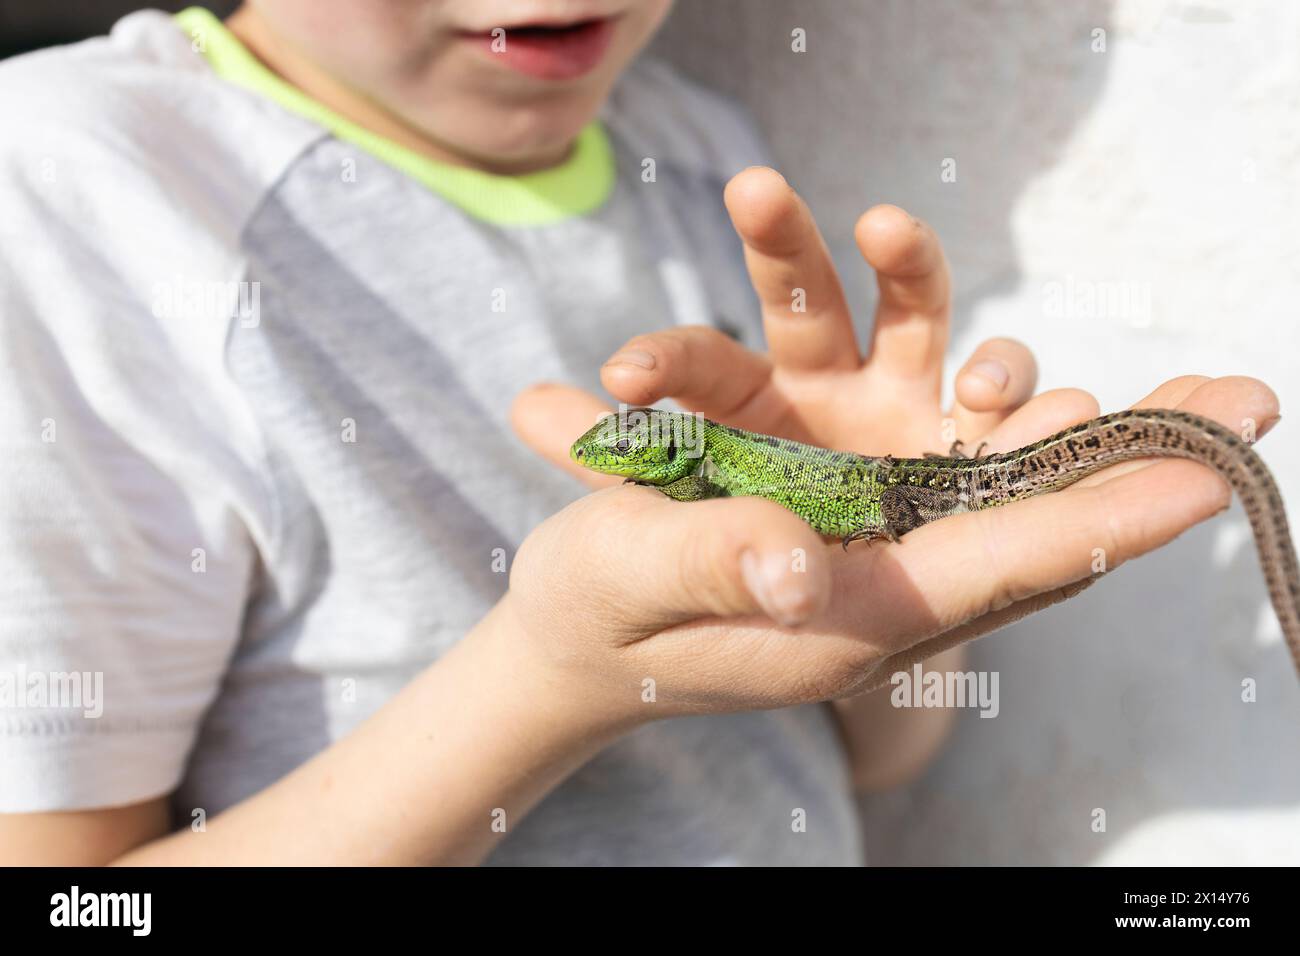 Il bambino tiene in mano una lucertola verde, la guarda con ammirazione e la studia. Il bambino è alla ricerca di fauna ed è interessato a studiare Foto Stock